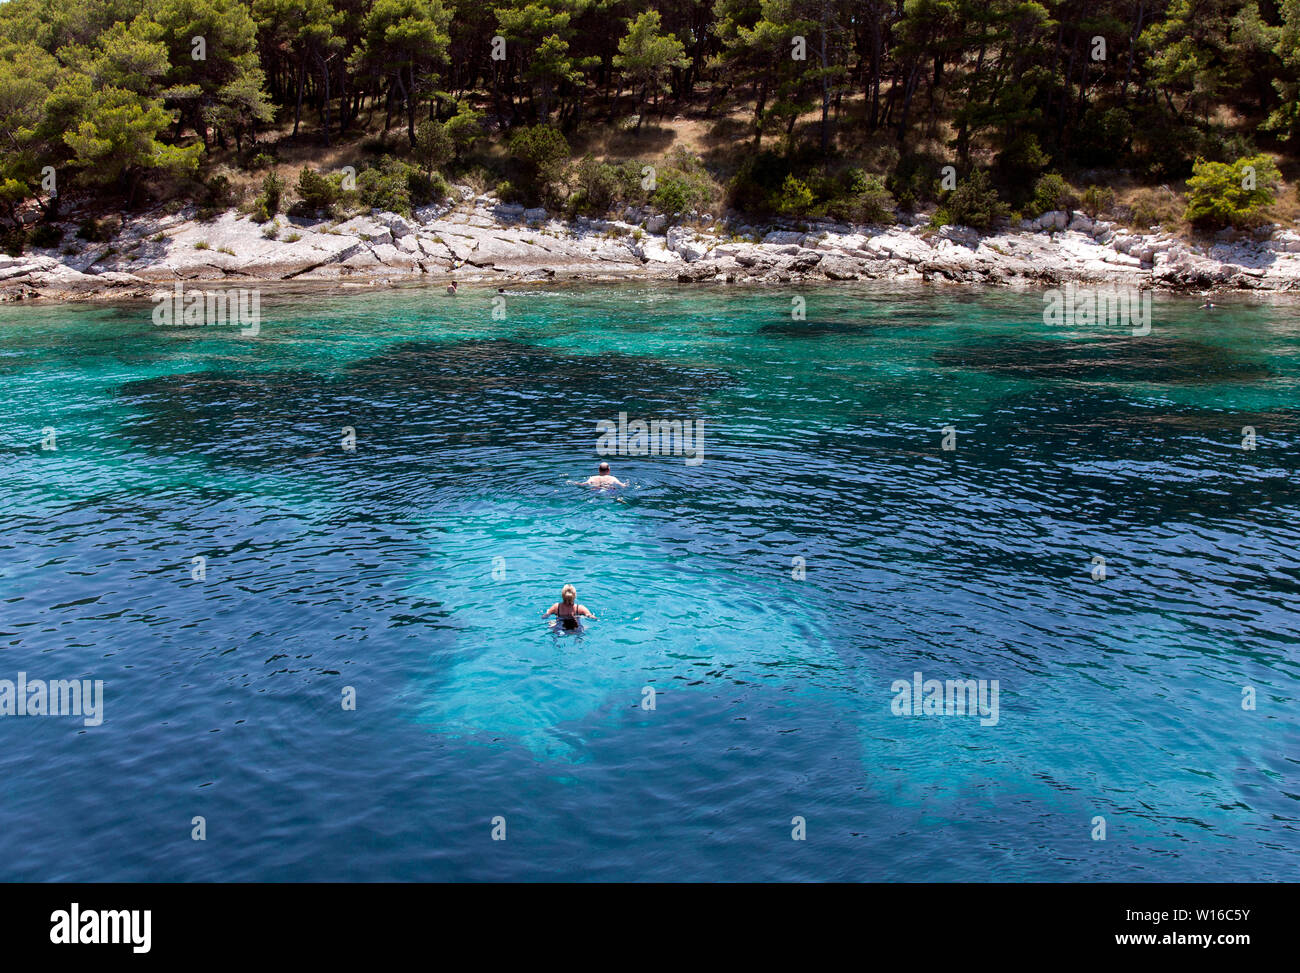 La natation de personnes dans une mer Adriatique cove sur une île sans nom près de Hvar. Couleur naturelle ; ne pas être améliorées dans Photoshop. Banque D'Images